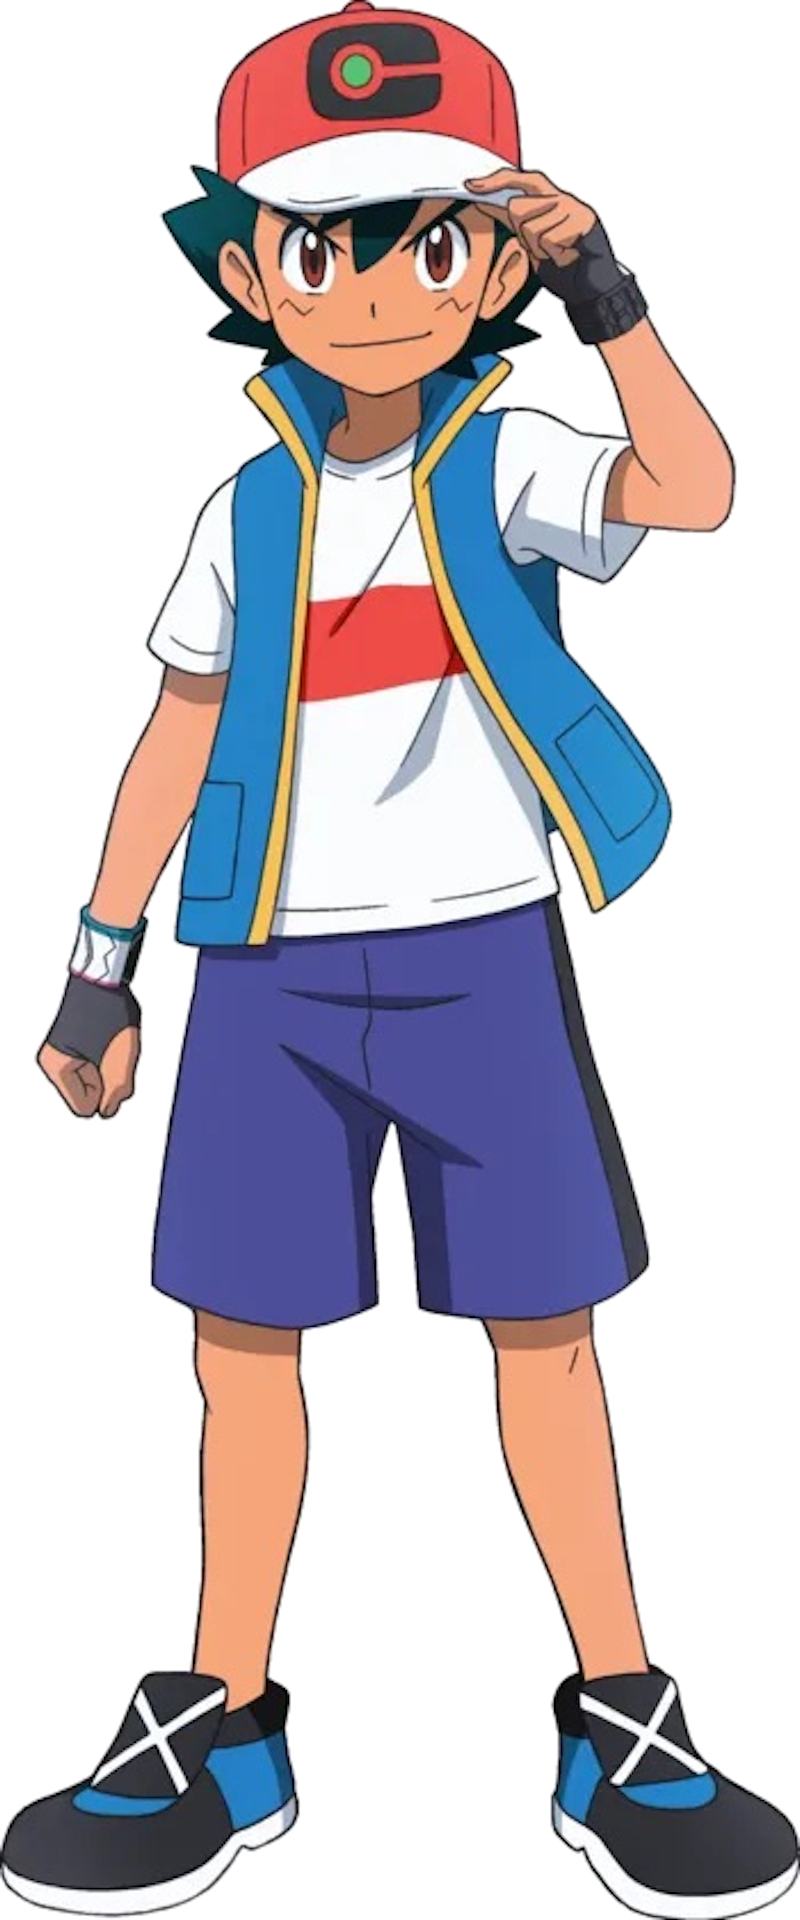 Ash Ketchum To Bring Back His Alolan Pokémon Team, Greninja Still Missing